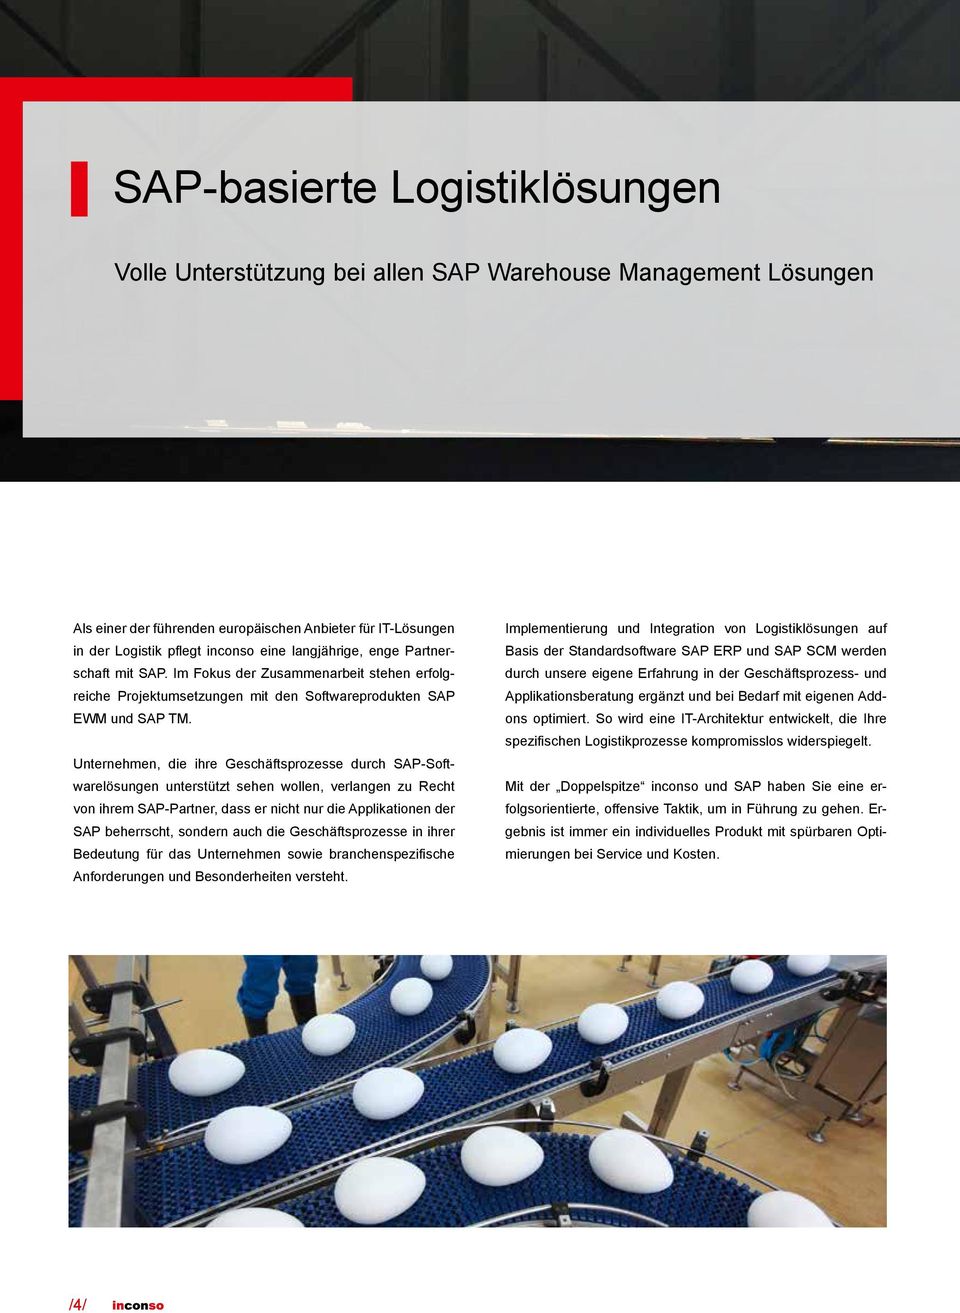 Unternehmen, die ihre Geschäftsprozesse durch SAP-Softwarelösungen unterstützt sehen wollen, verlangen zu Recht von ihrem SAP-Partner, dass er nicht nur die Applikationen der SAP beherrscht, sondern